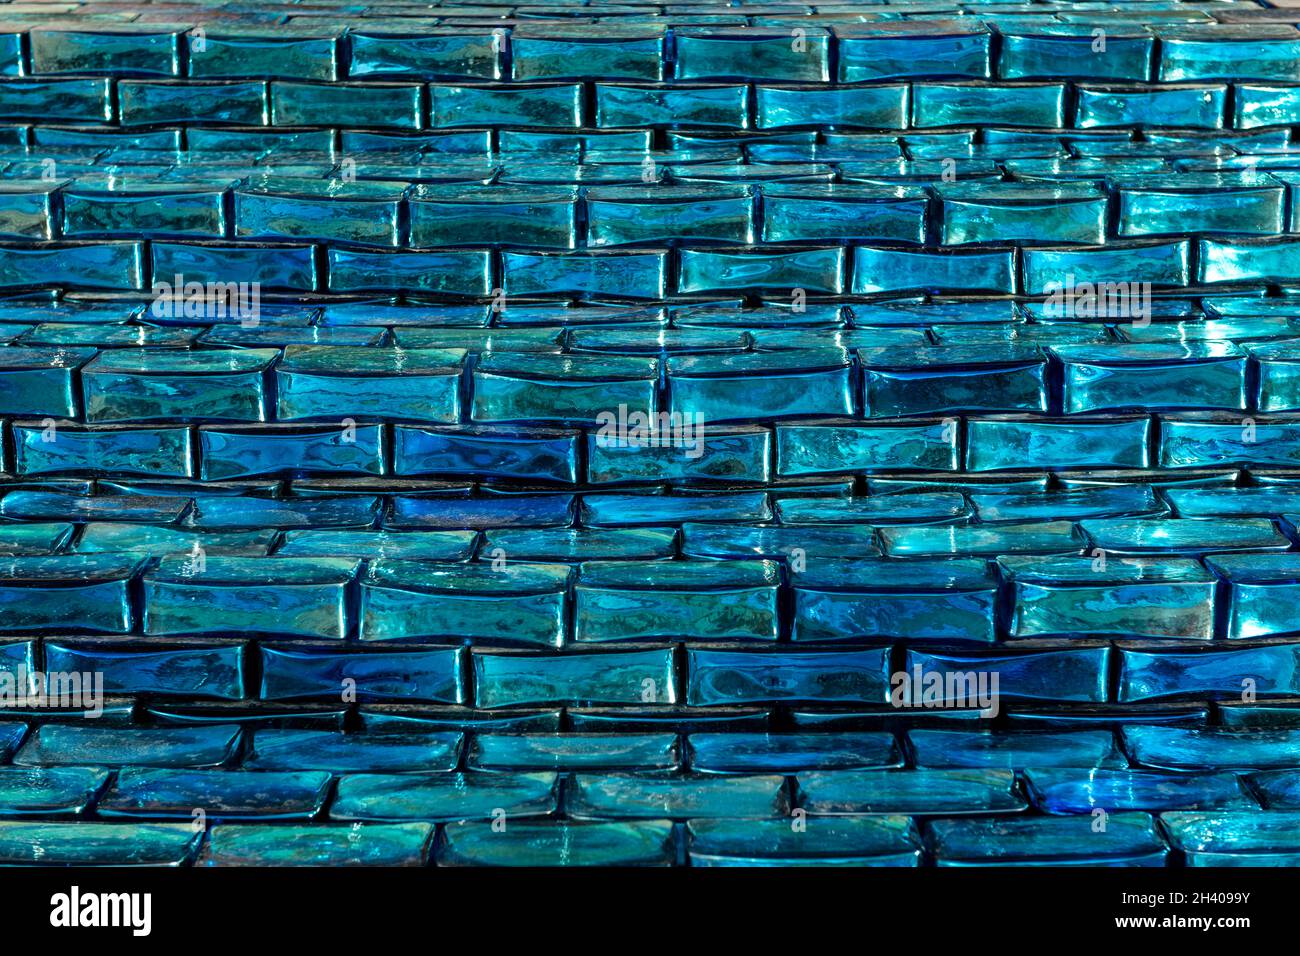 briques de verre bleues, illustration abstraite - illustration de stock Banque D'Images